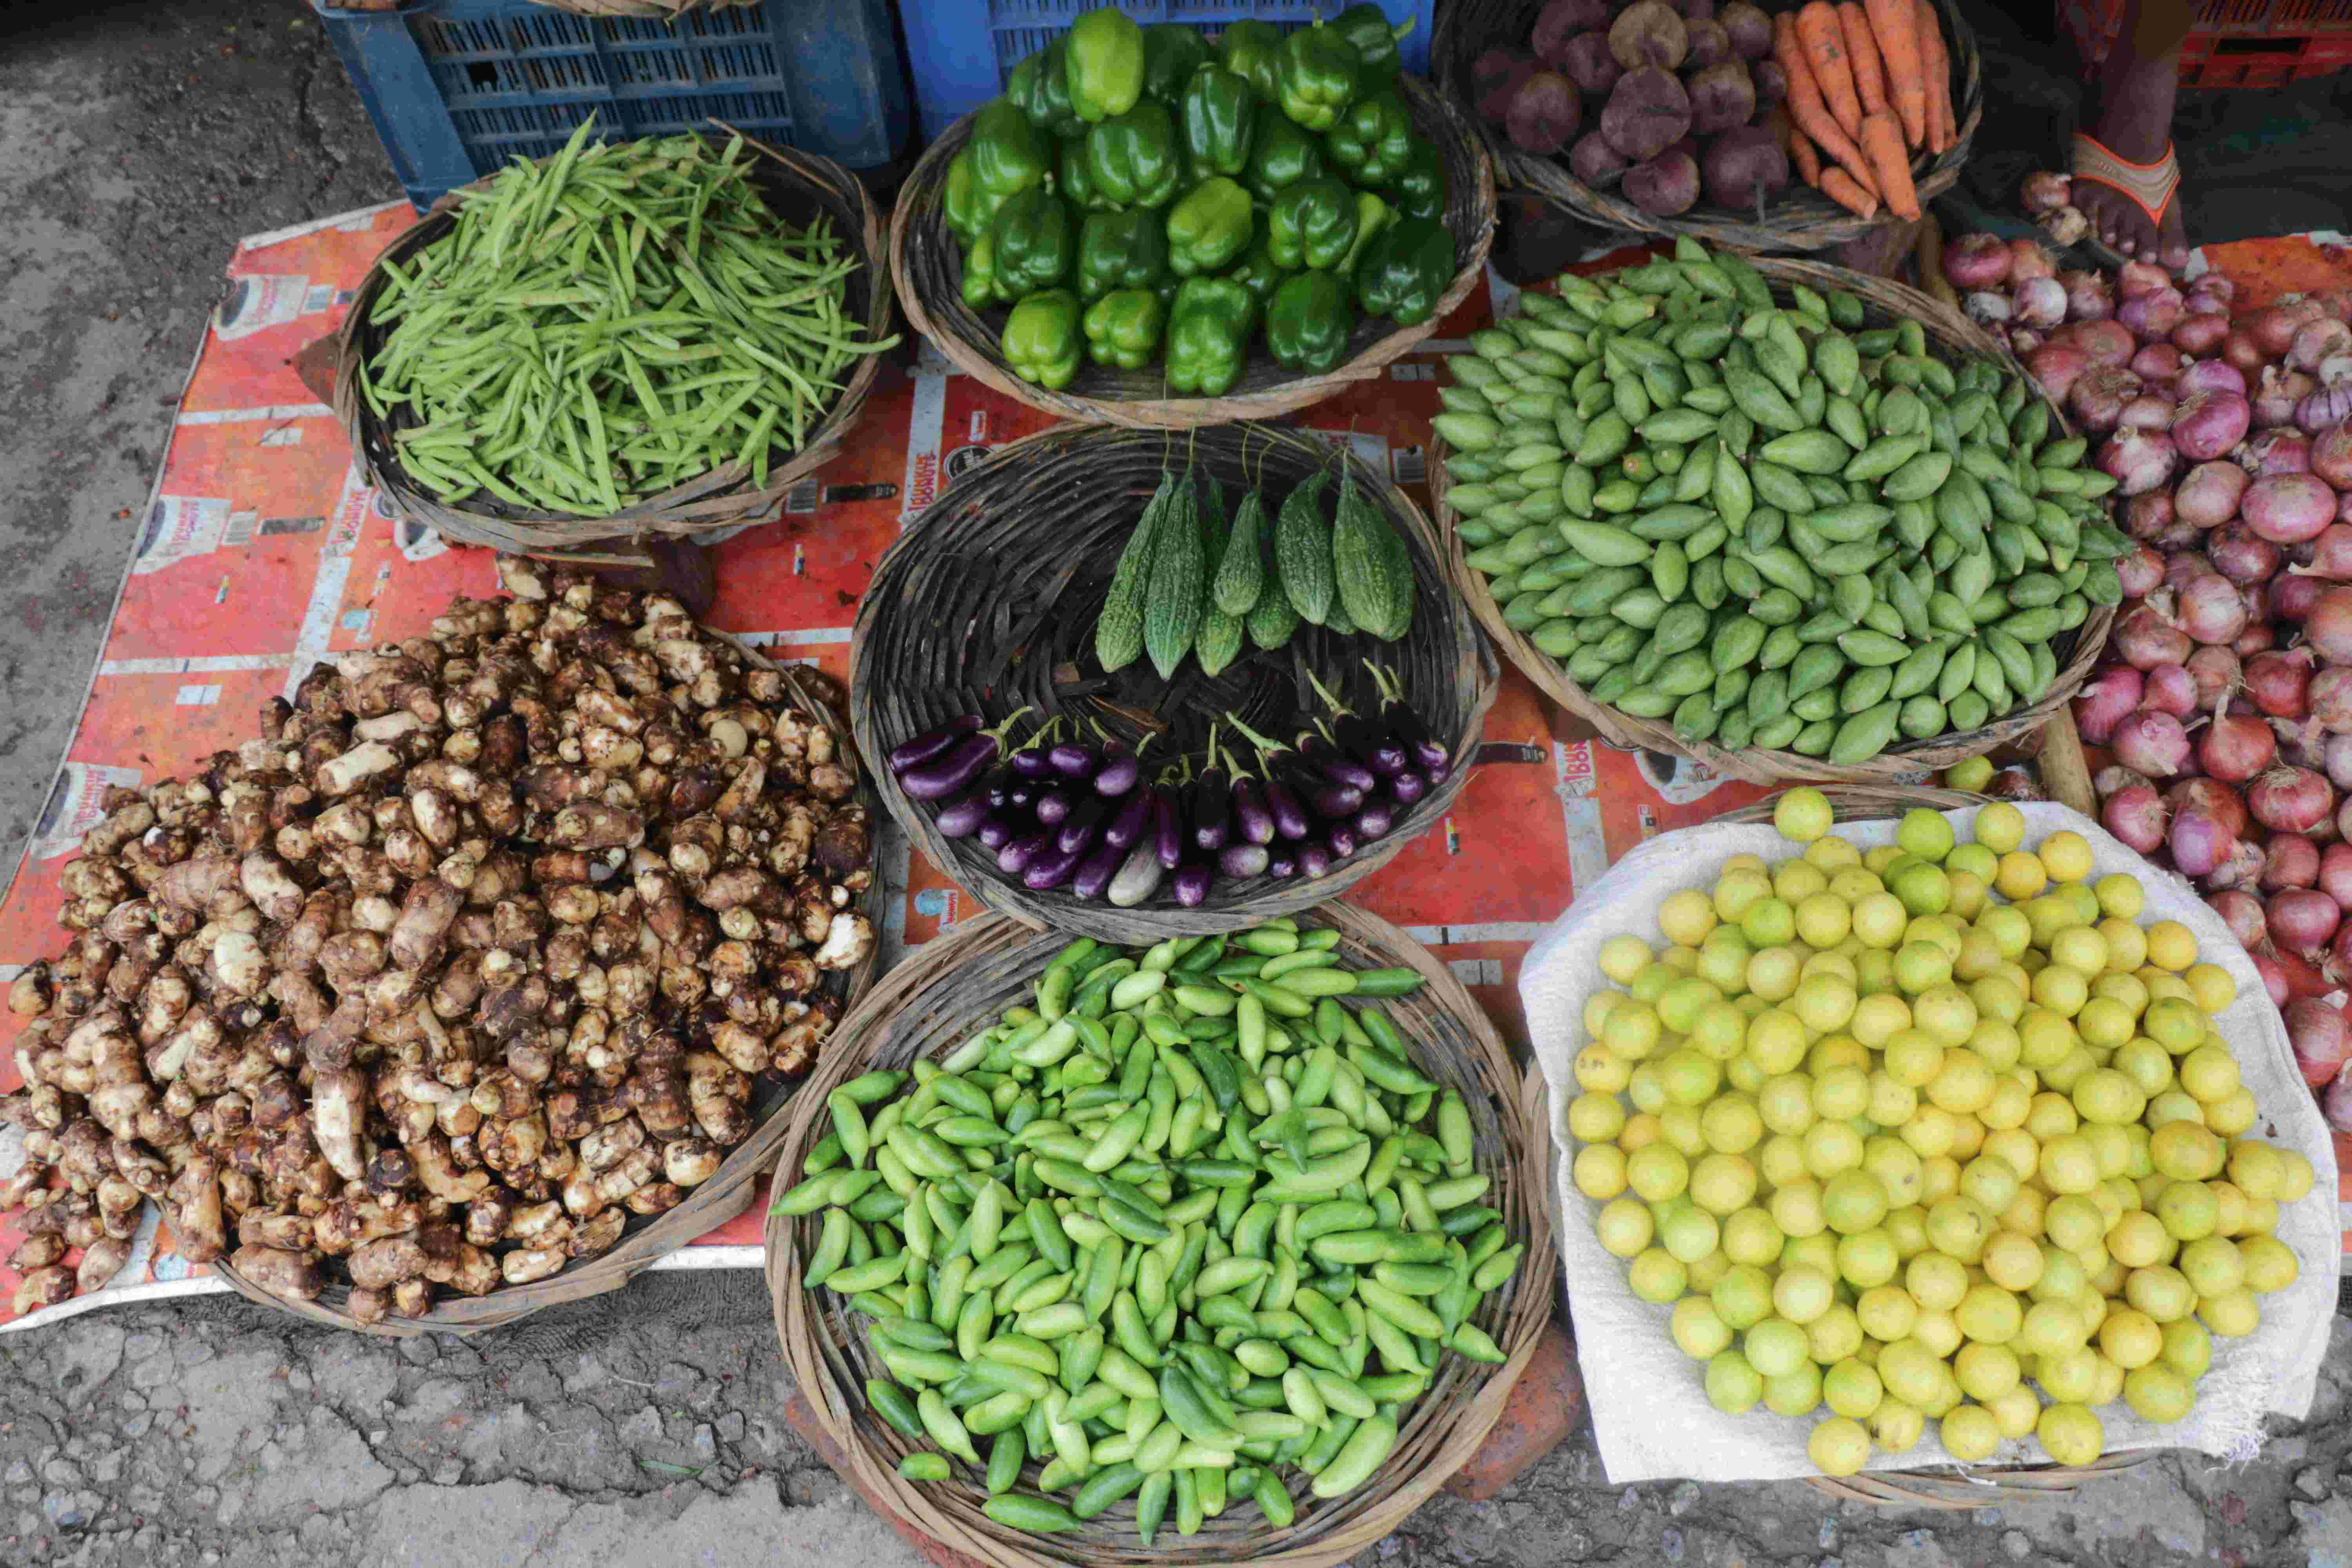 हाइब्रिड सब्जियां उगाइए और अनुदान पाइए, उत्तर प्रदेश सरकार की नई पहल